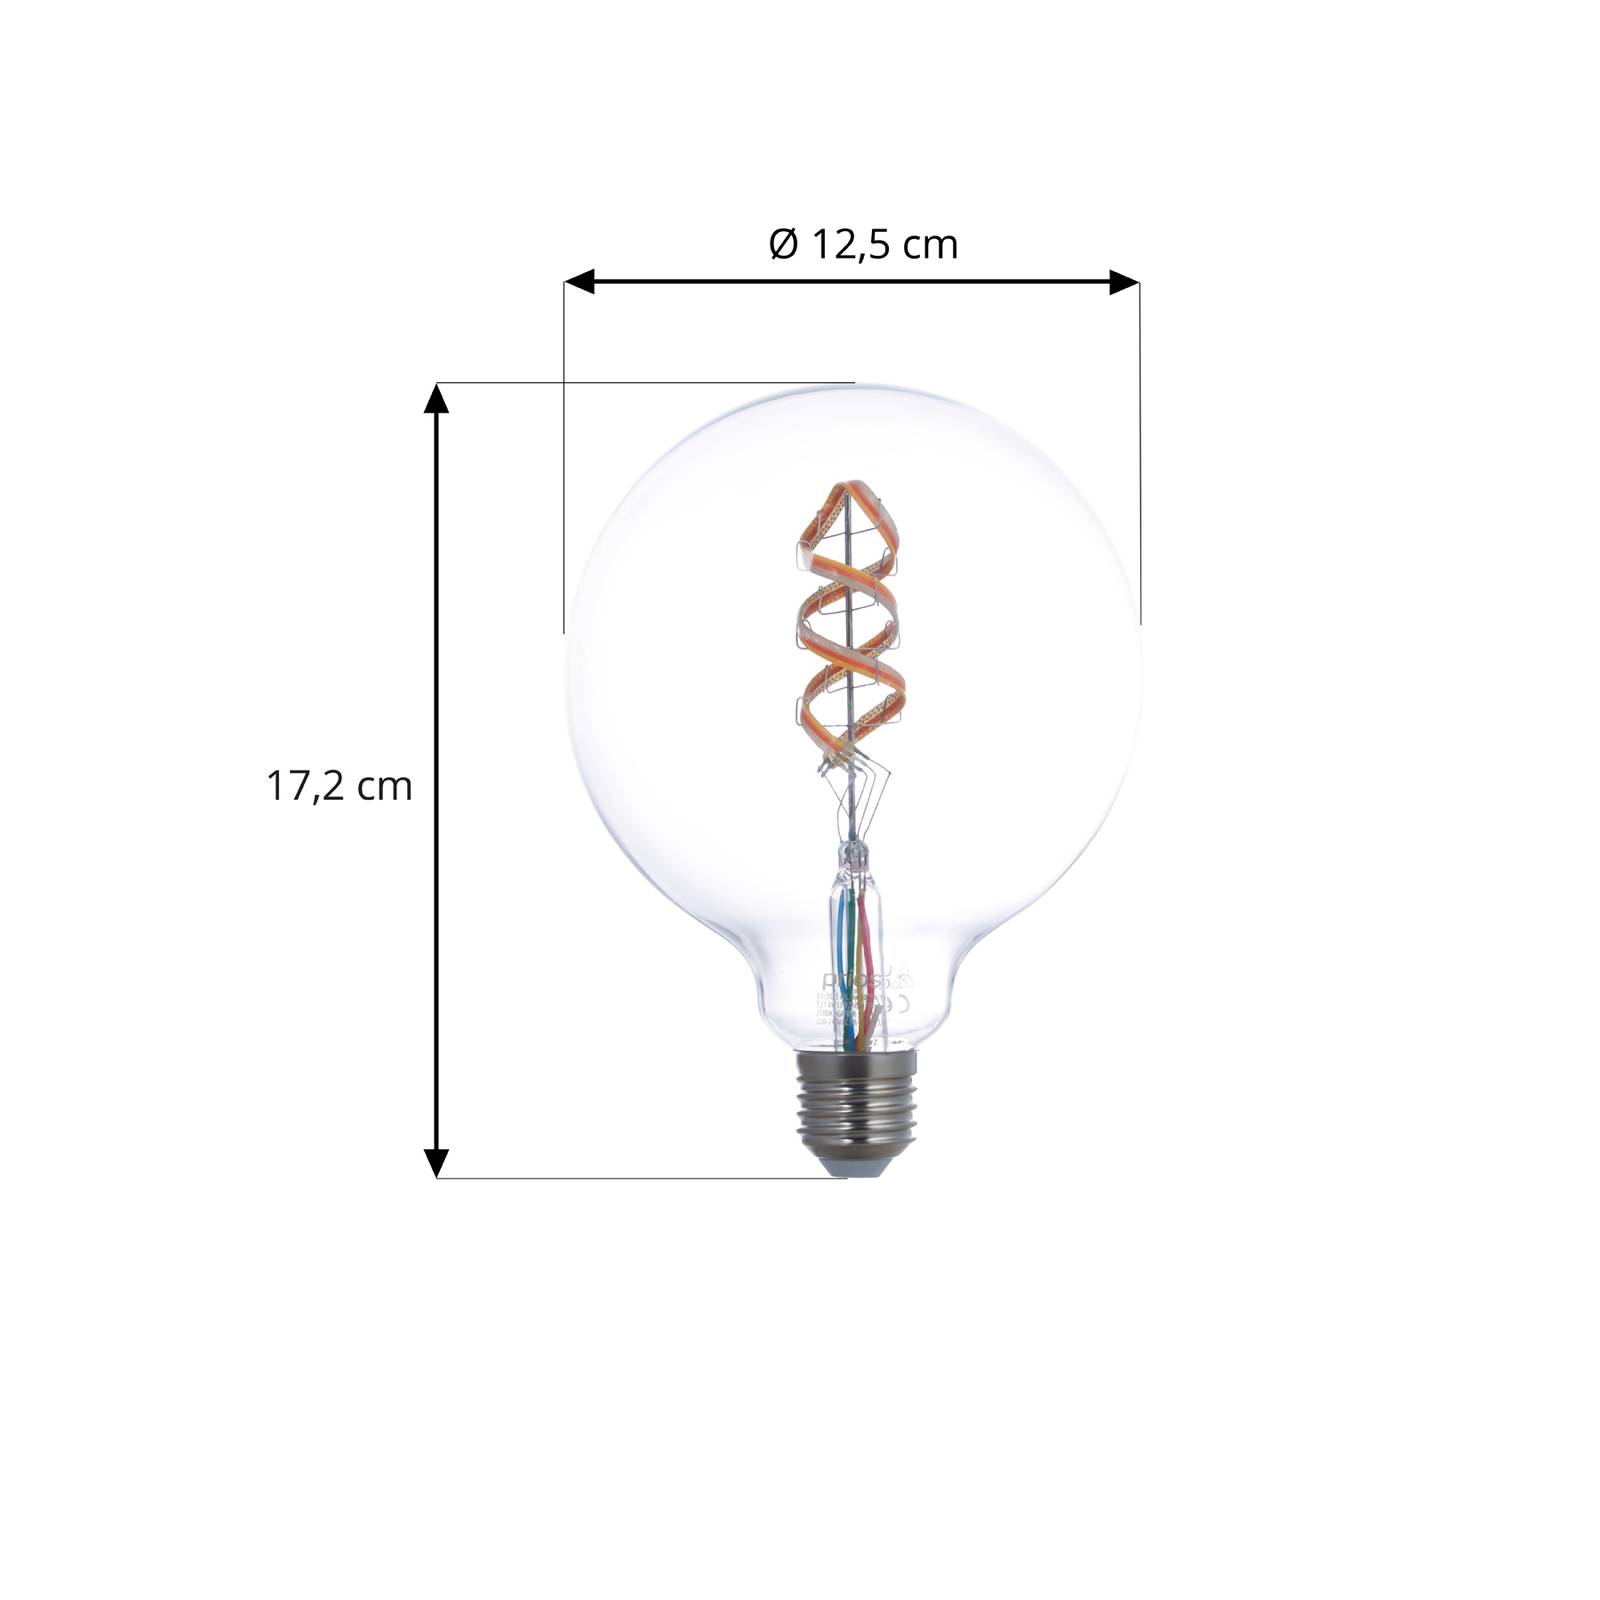 PRIOS Smart LED E27 G125 4W RGB WLAN klar tunable white